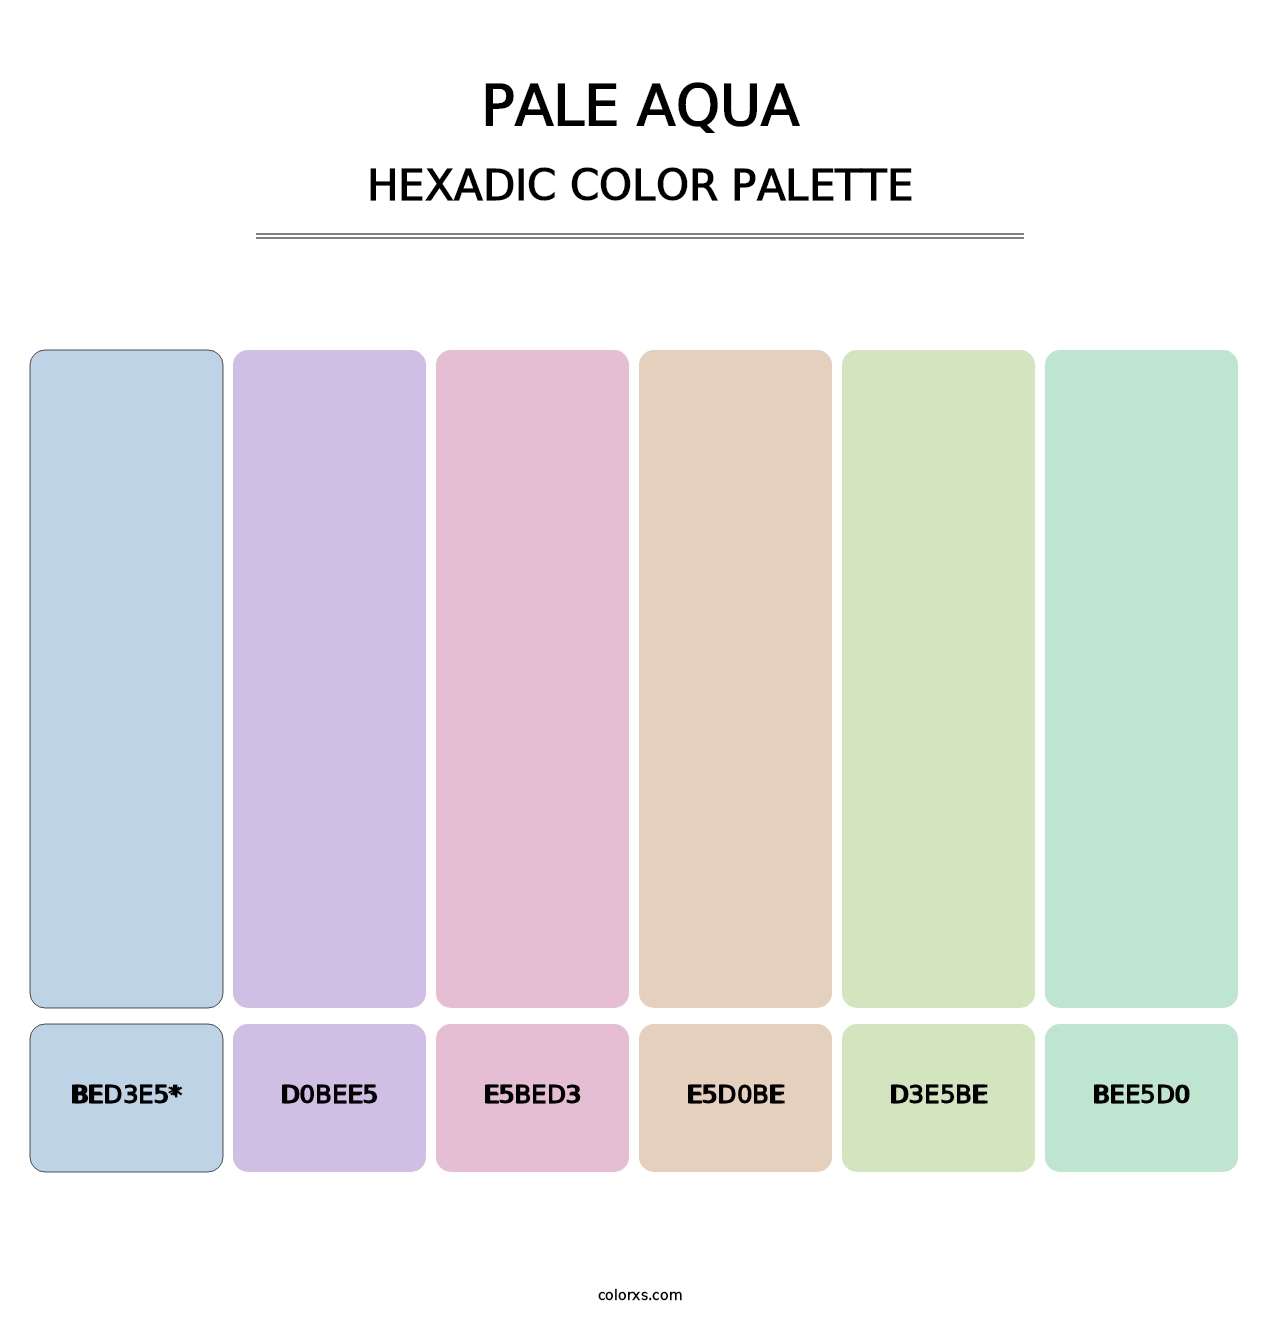 Pale Aqua - Hexadic Color Palette